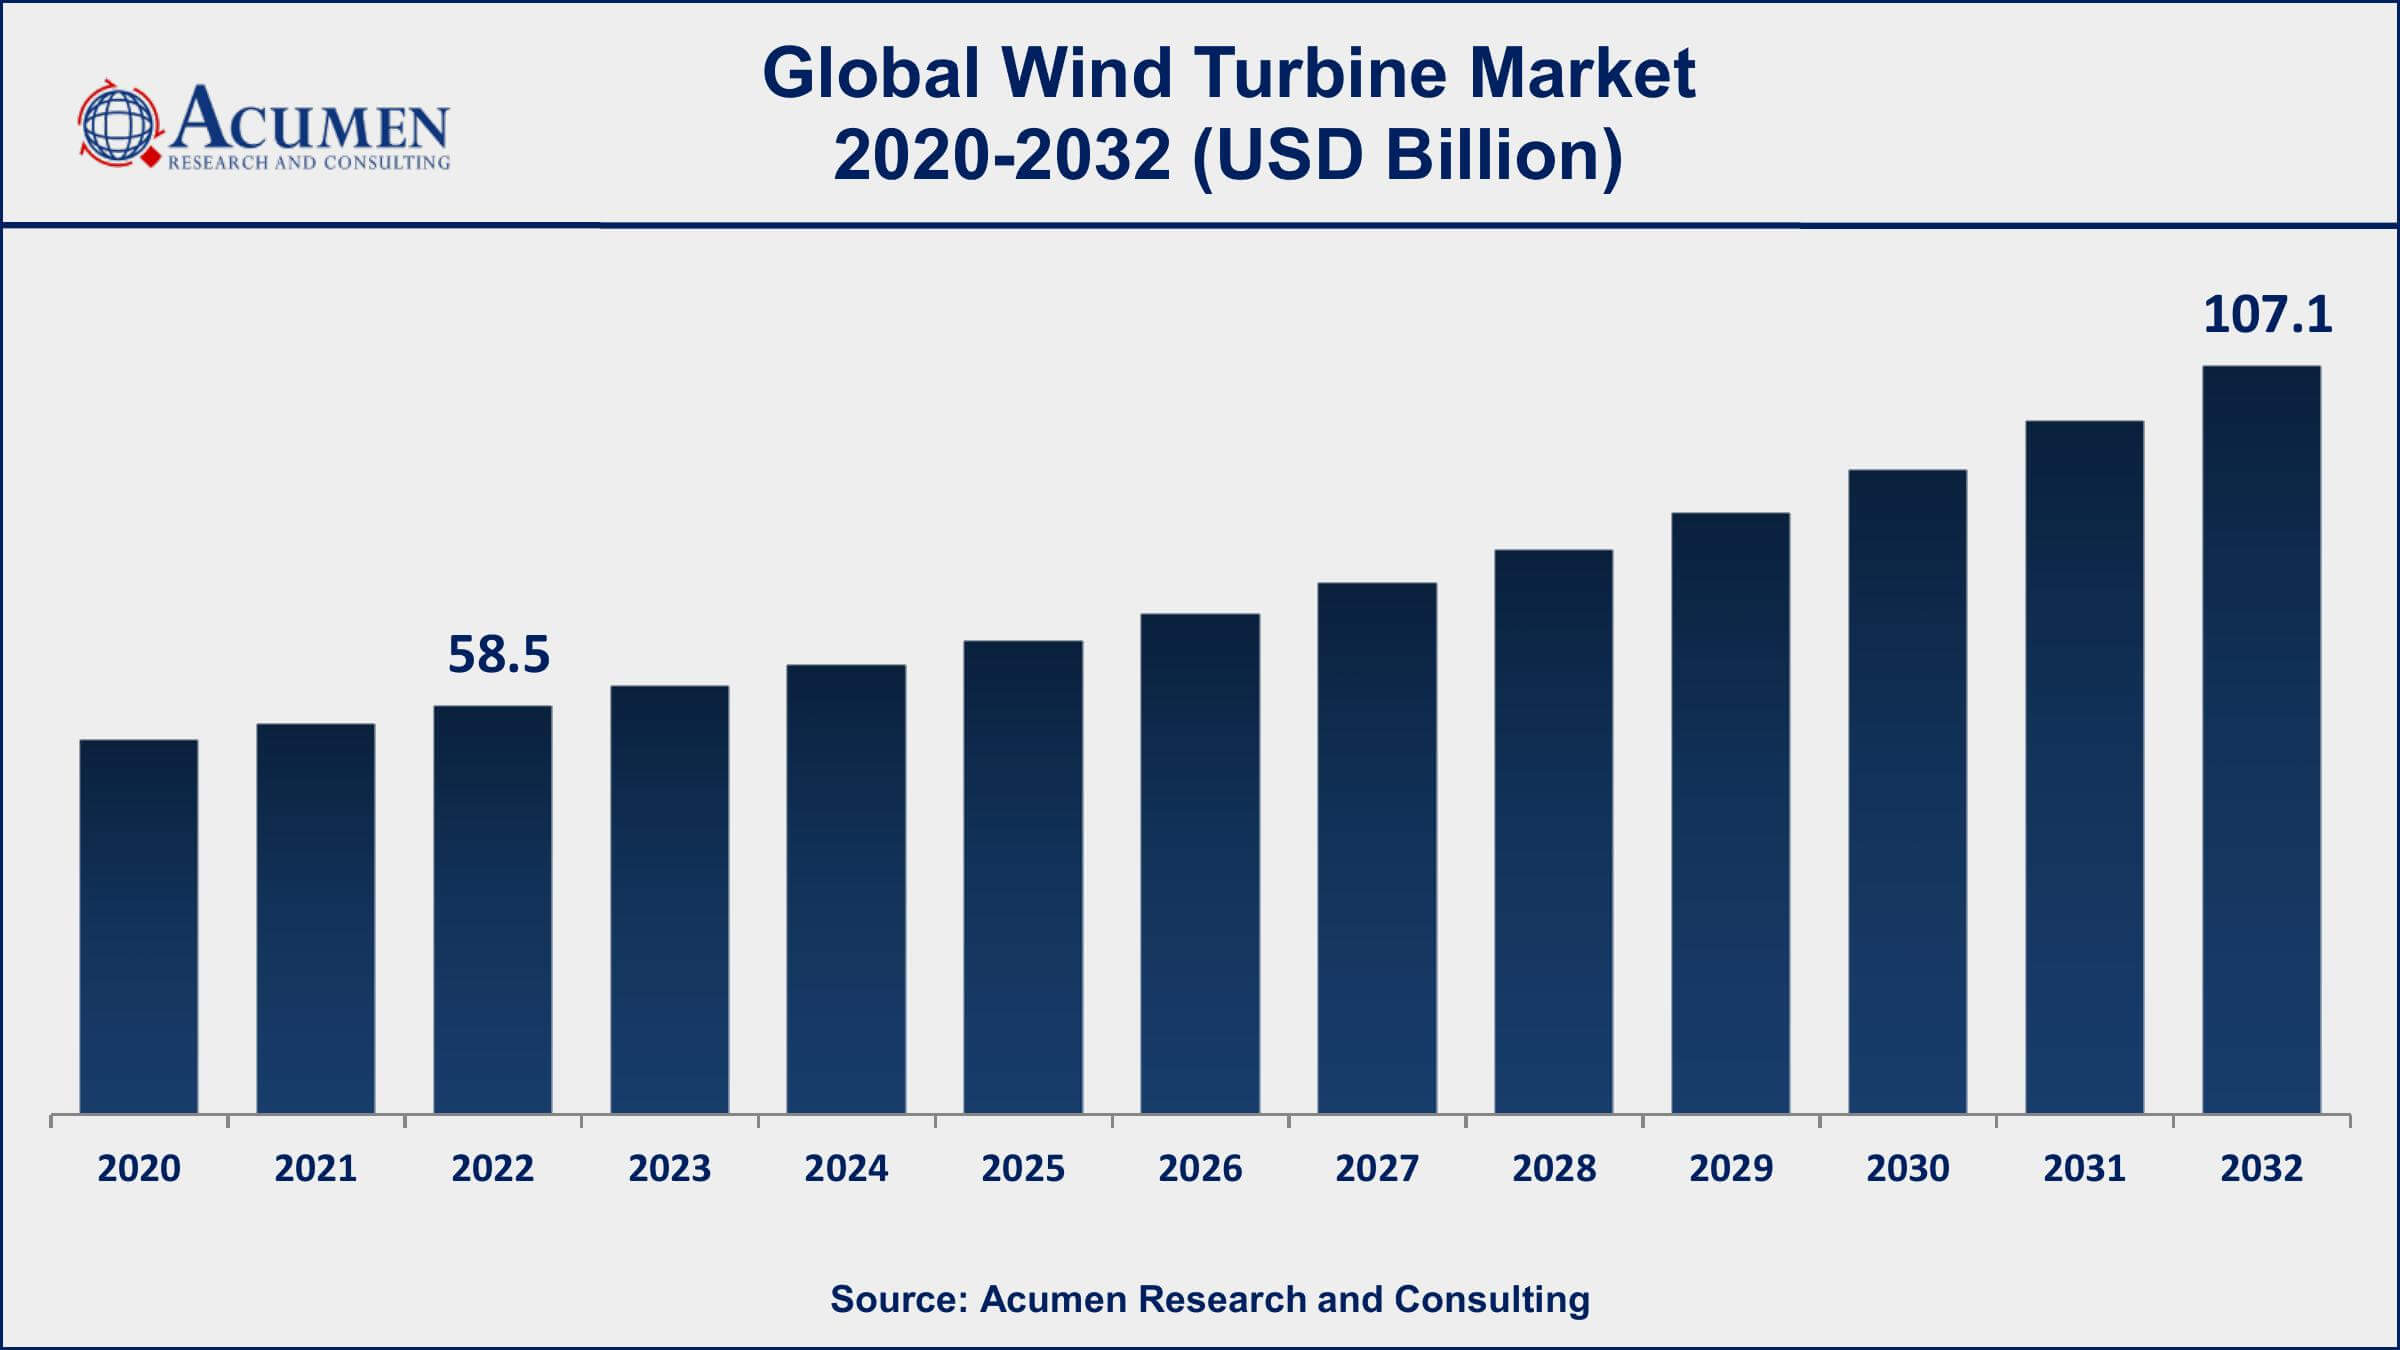 Wind Turbine Market Dynamics